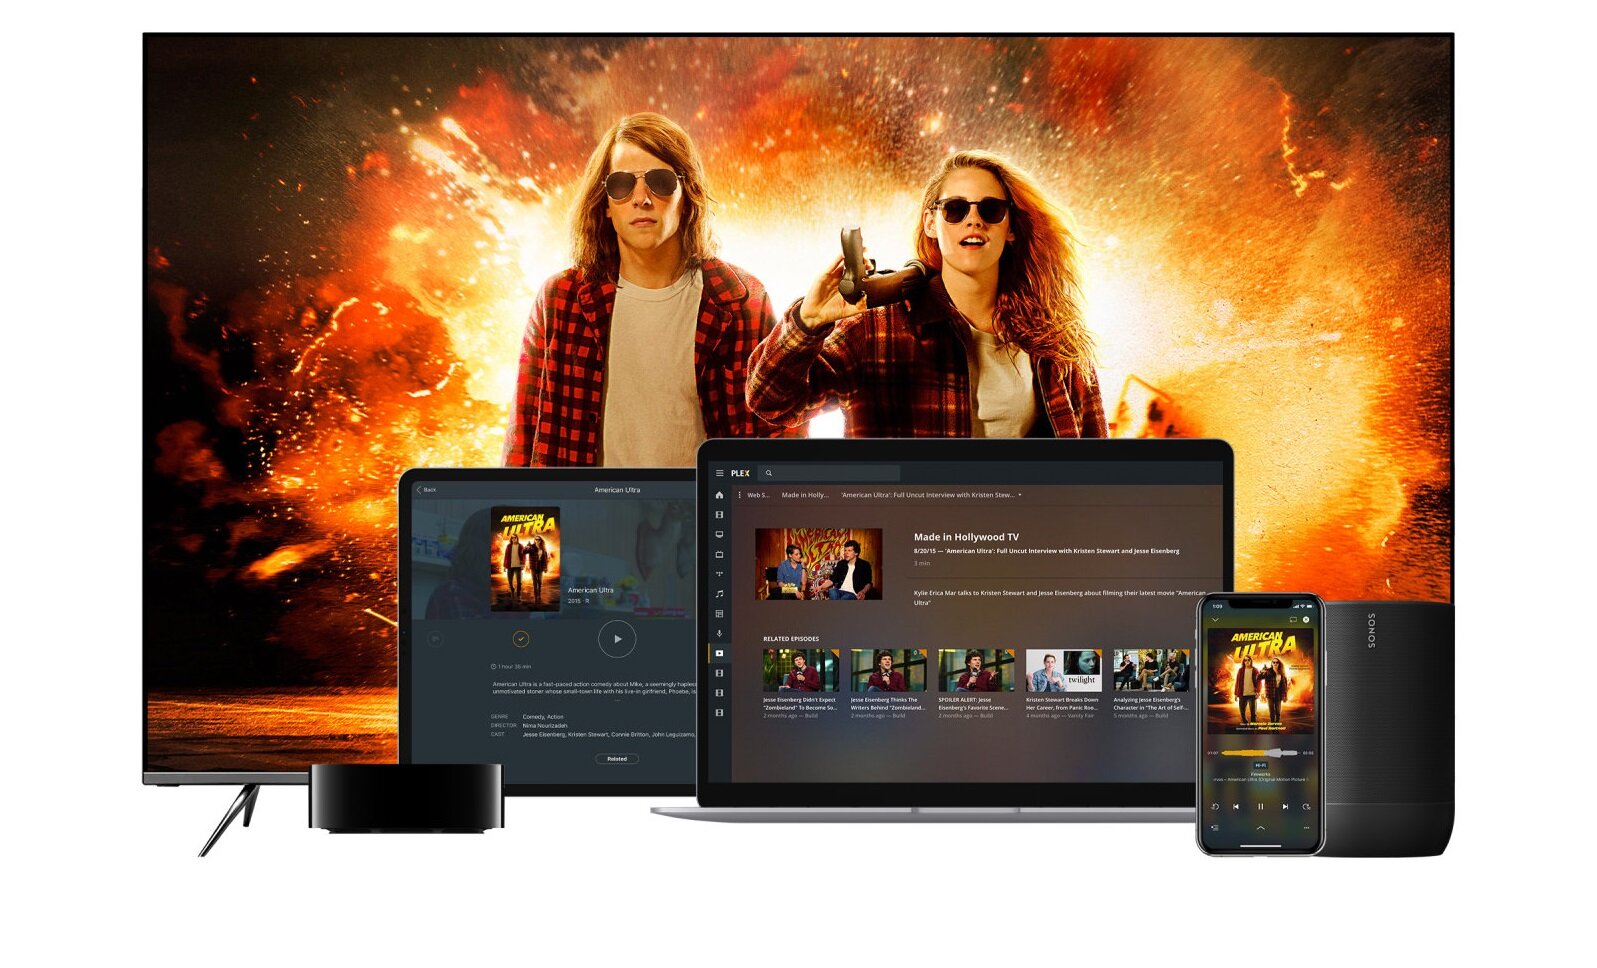 H Plex ανακοίνωσε δωρεάν υπηρεσία streaming τηλεοπτικών σειρών και κινηματογραφικών ταινιών